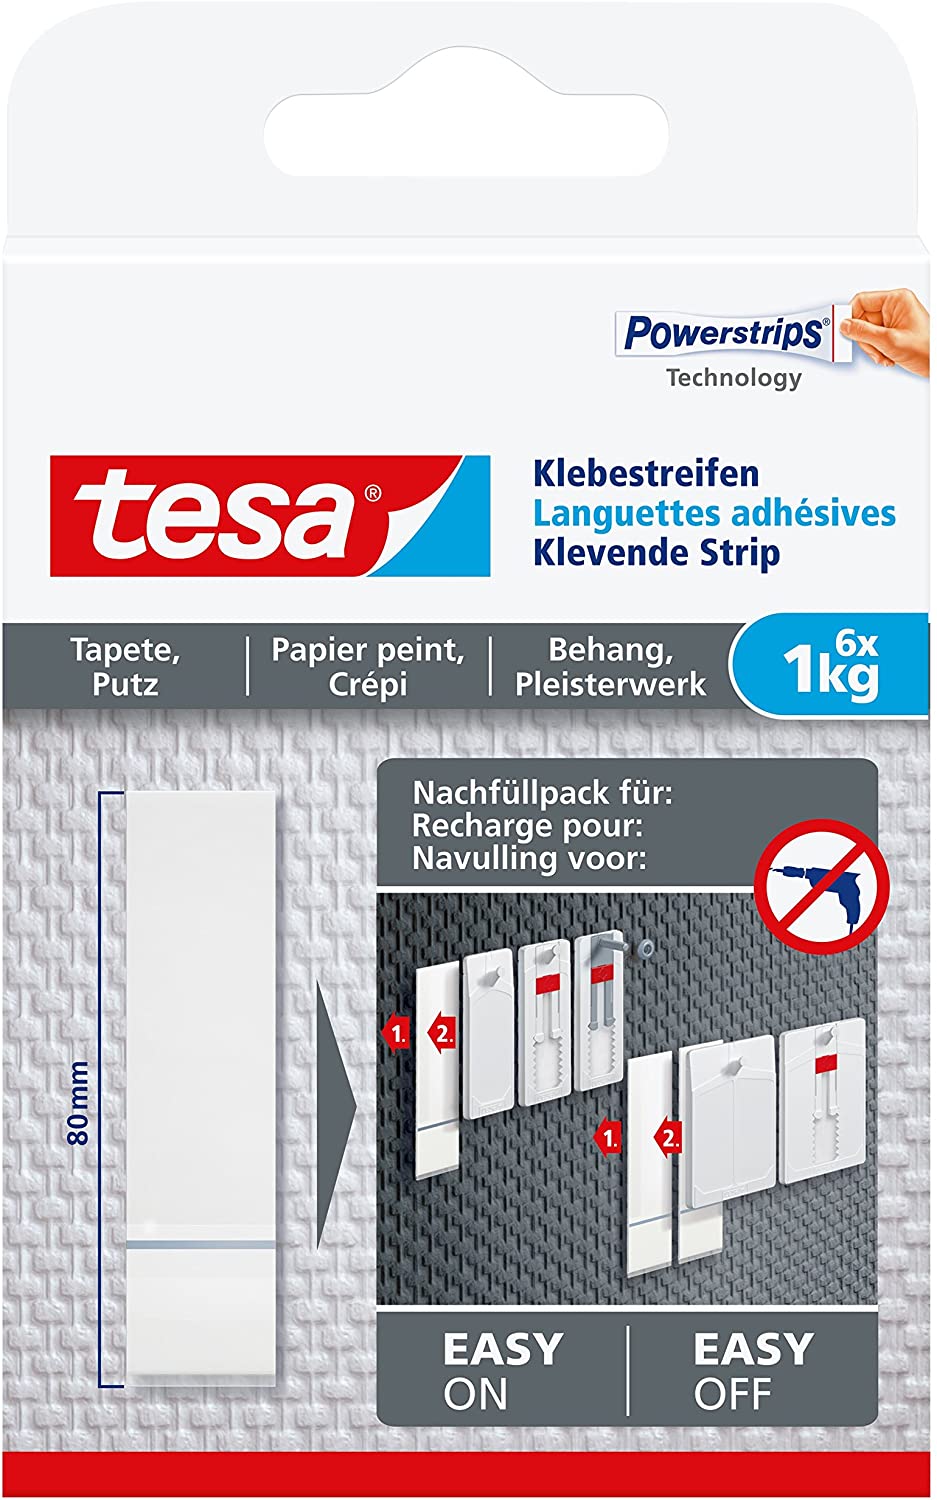 Tesa Powerstripes Wallpaper & Plaster 1kg 5x Pck. value pack